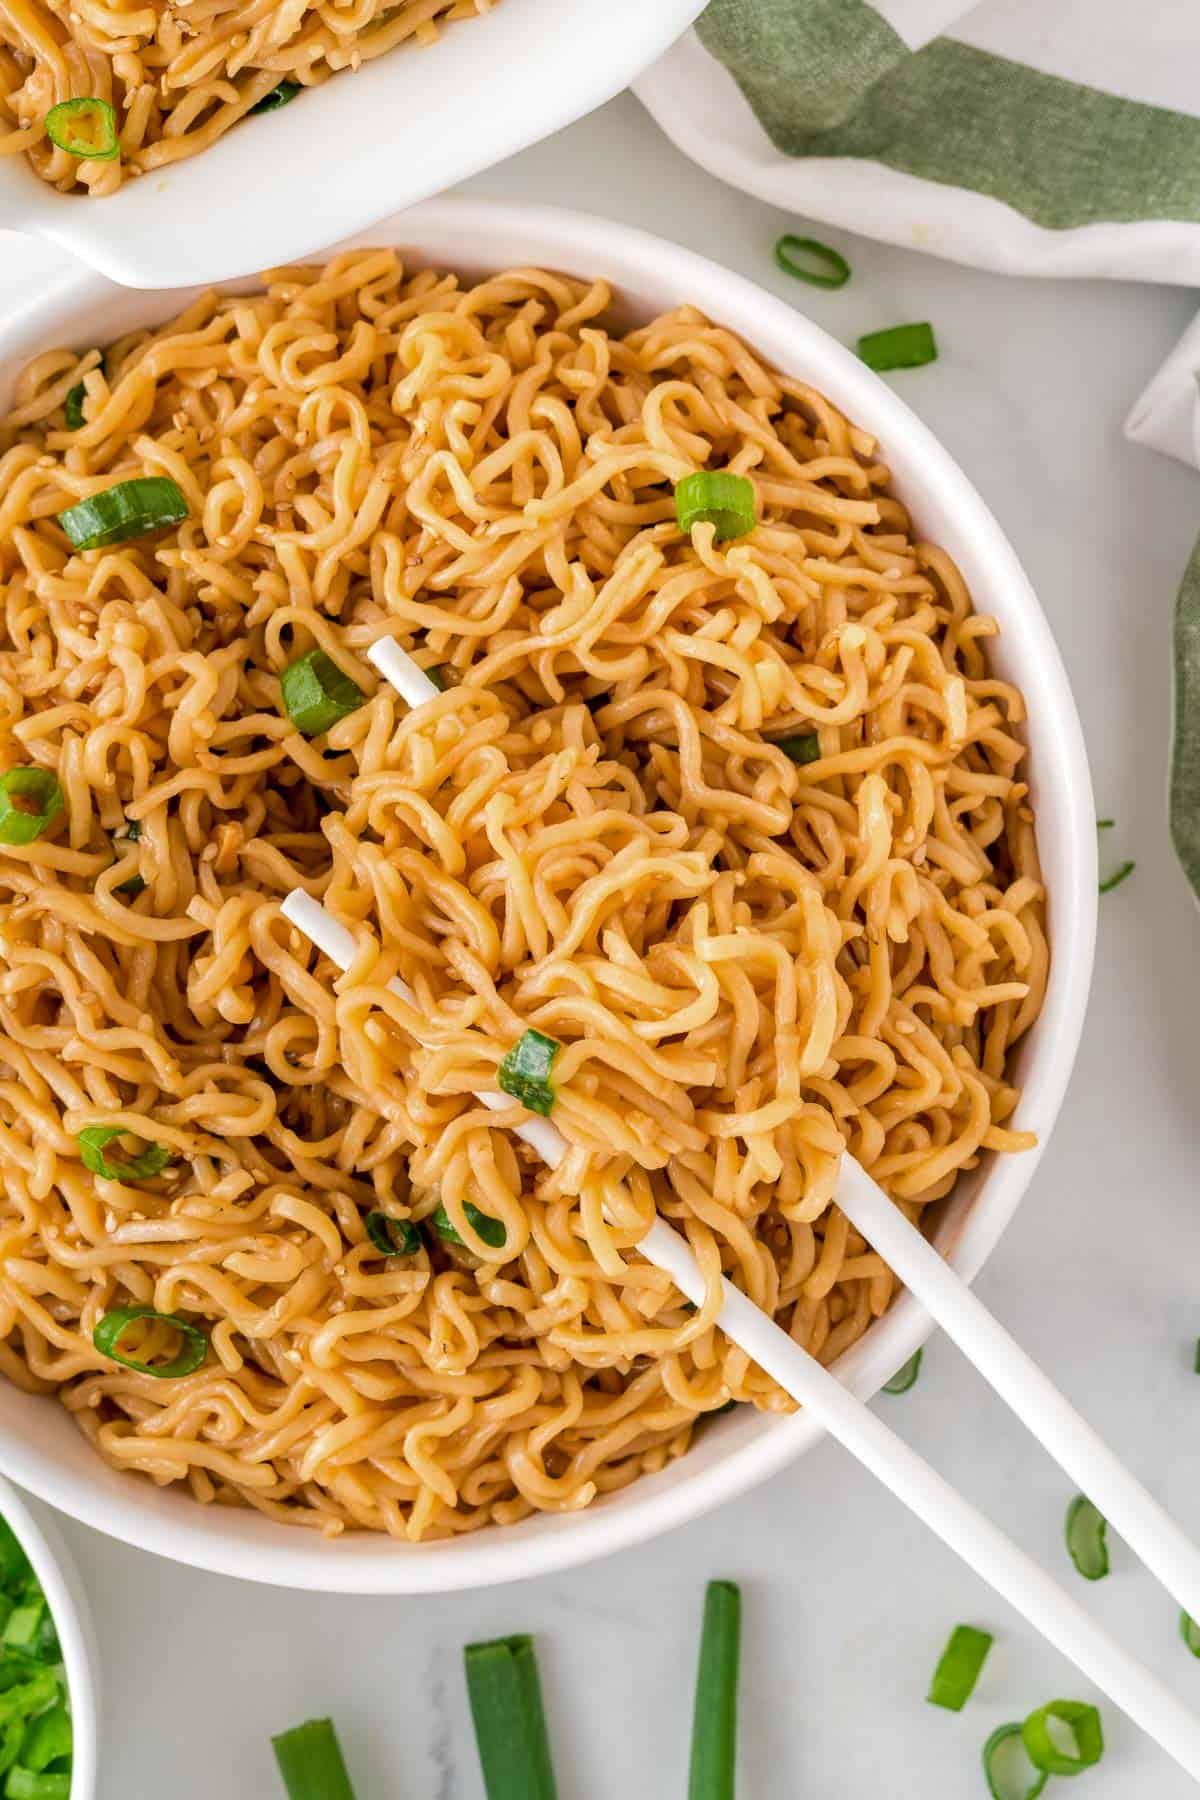 chopsticks in a bowl of ramen noodles